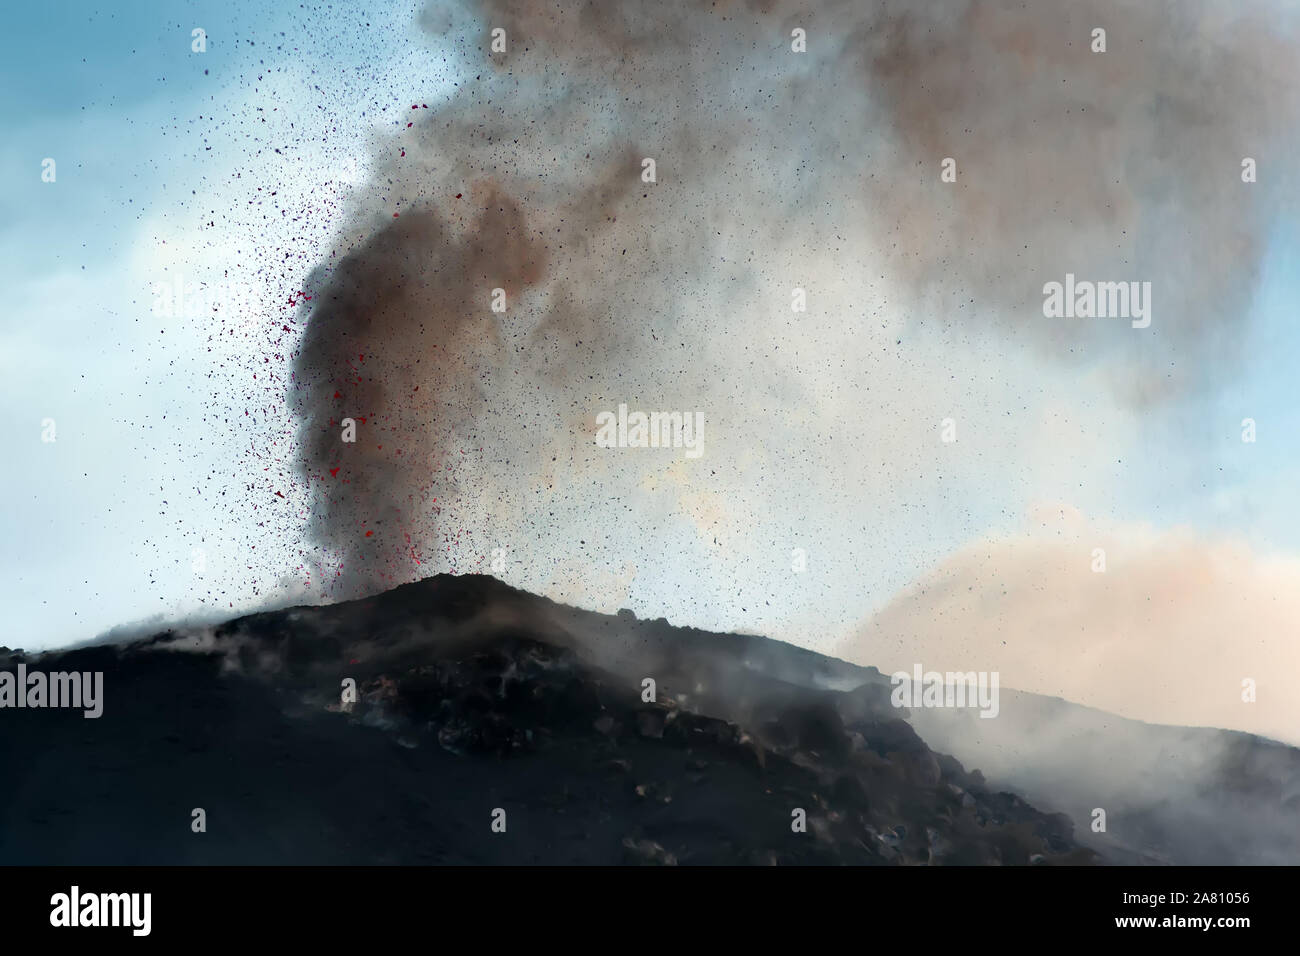 Explosive Eruption mit Projektionen von Magma und Rauch in einem der drei Krater des aktiven Vulkans Stromboli, Äolische Inseln, Italien. Stockfoto